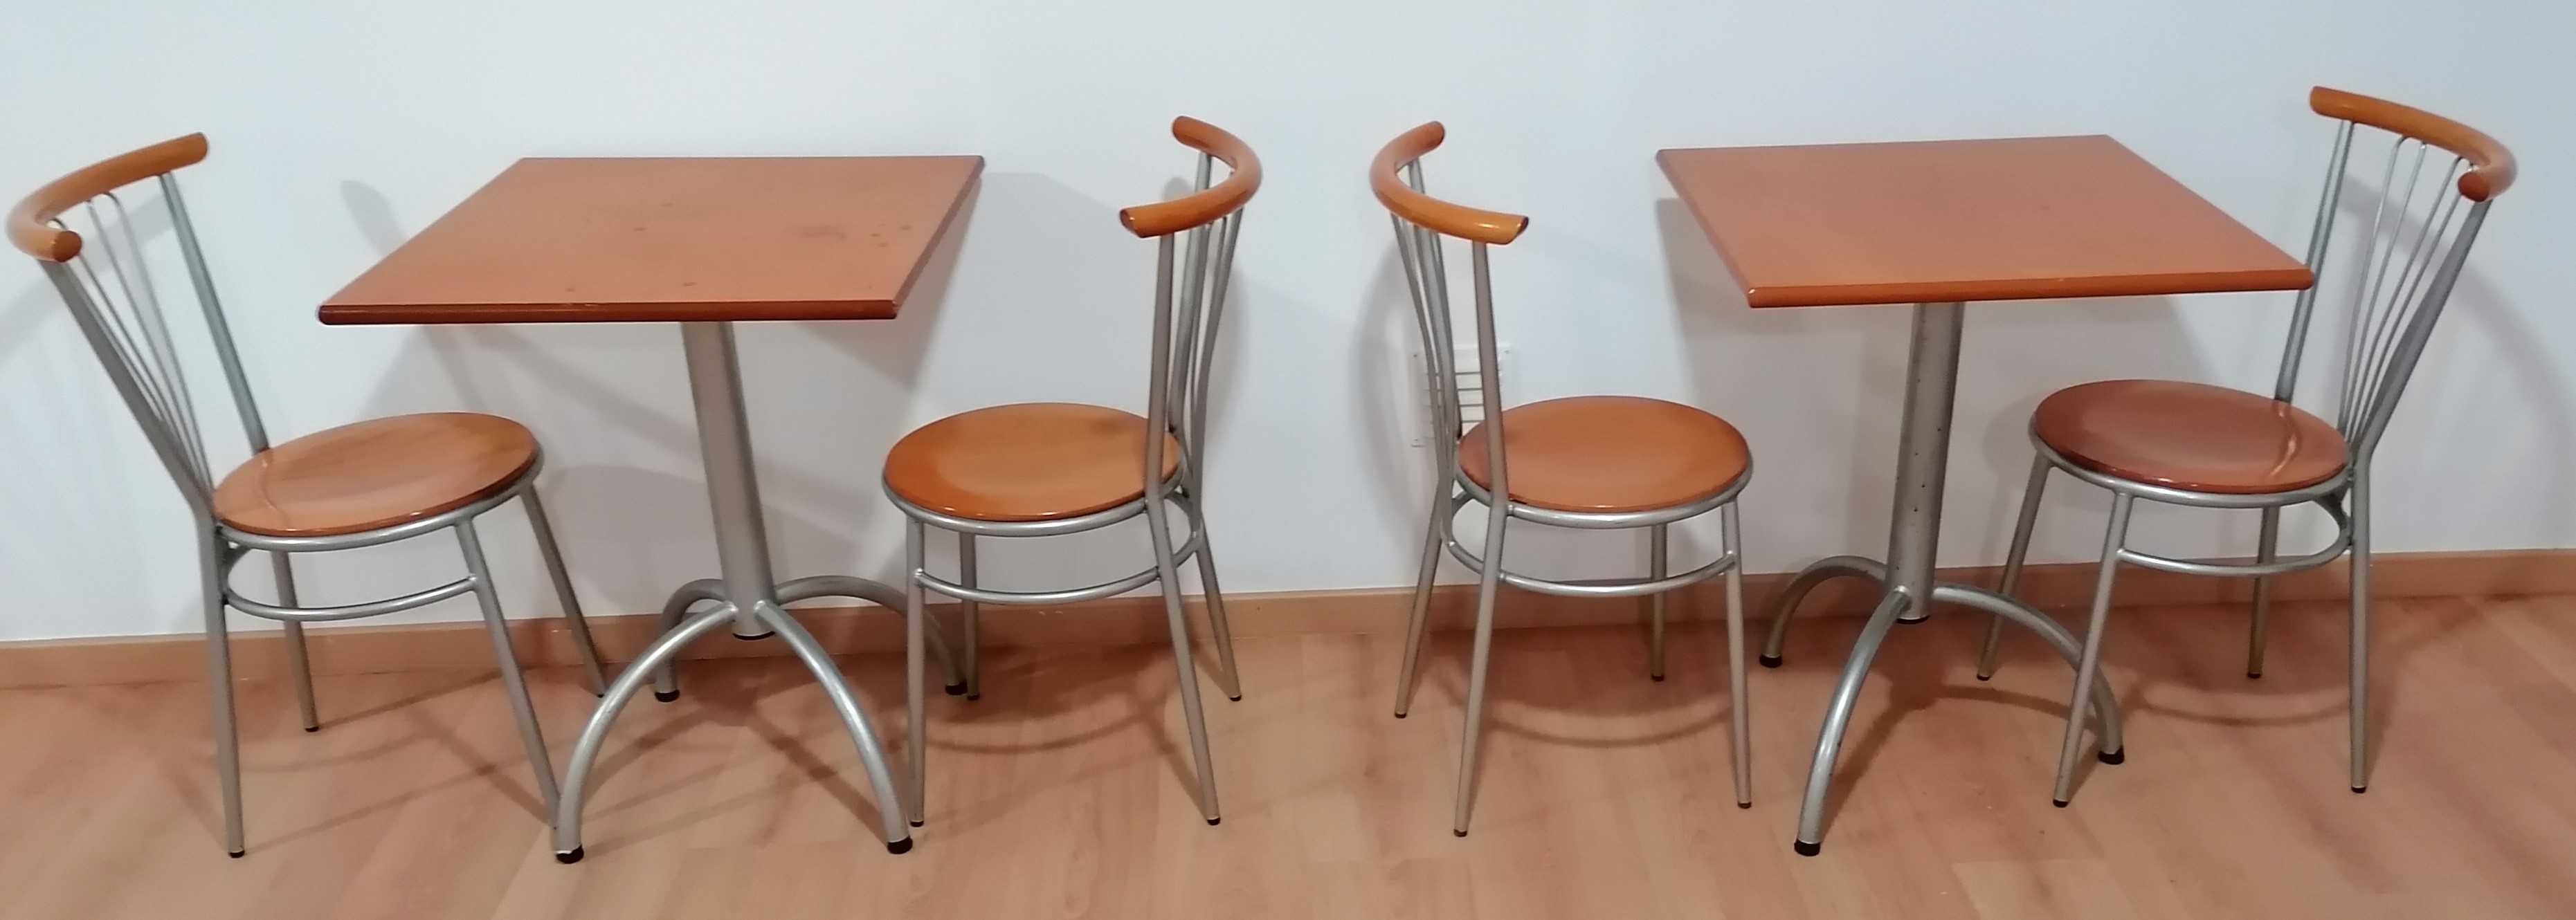 Conjunto de 2 Mesas e 4 cadeiras para café/pastelaria